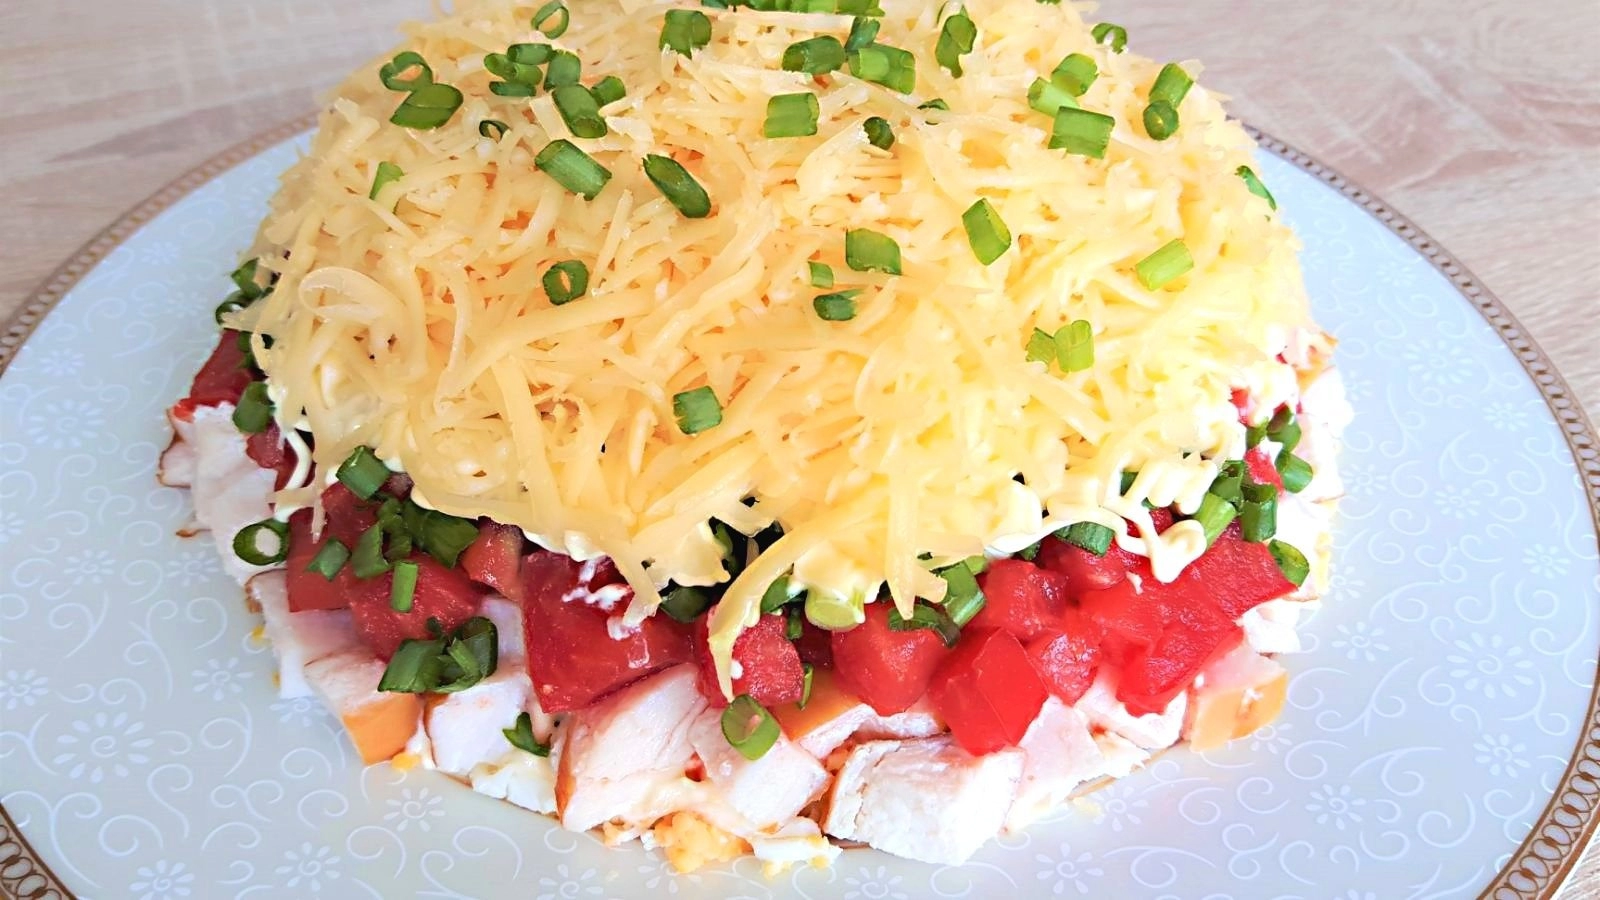 Вкуснейший салат за 5 минут с помидорами и куриной грудкой. Салат можно приготовить как на праздник, так и на каждый день.